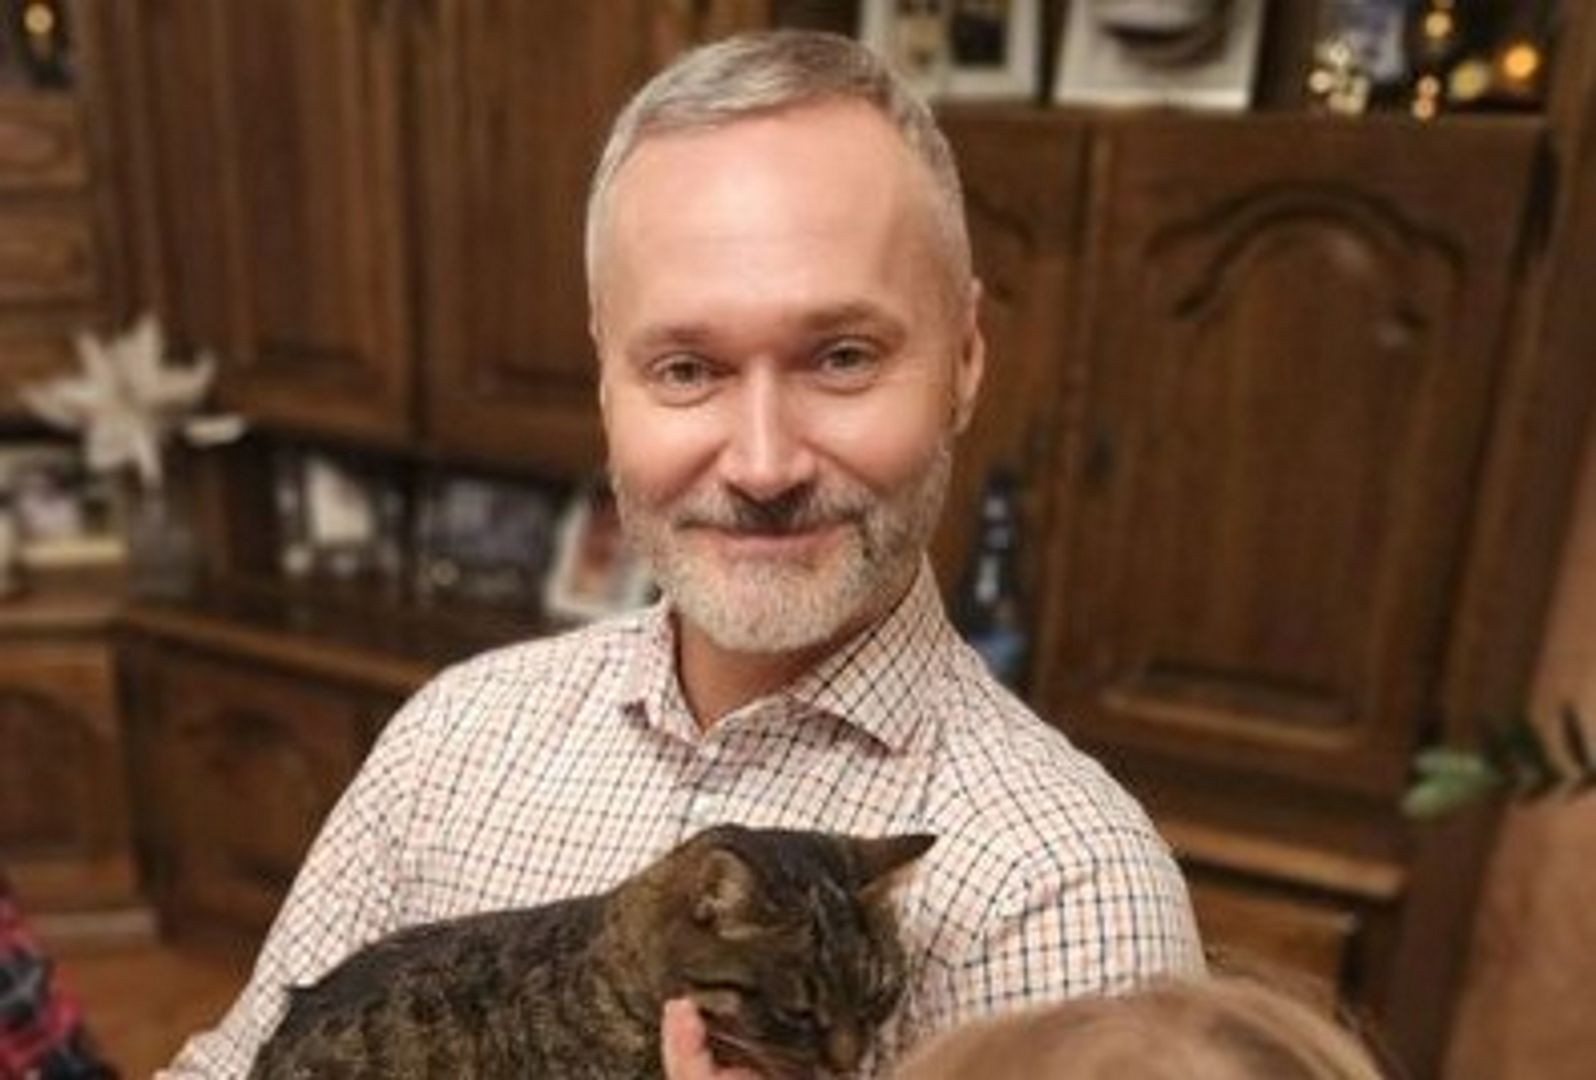 Wałęsa wrzucił zdjęcie z kotem. "O co chodzi z Jarkami i kotami?"